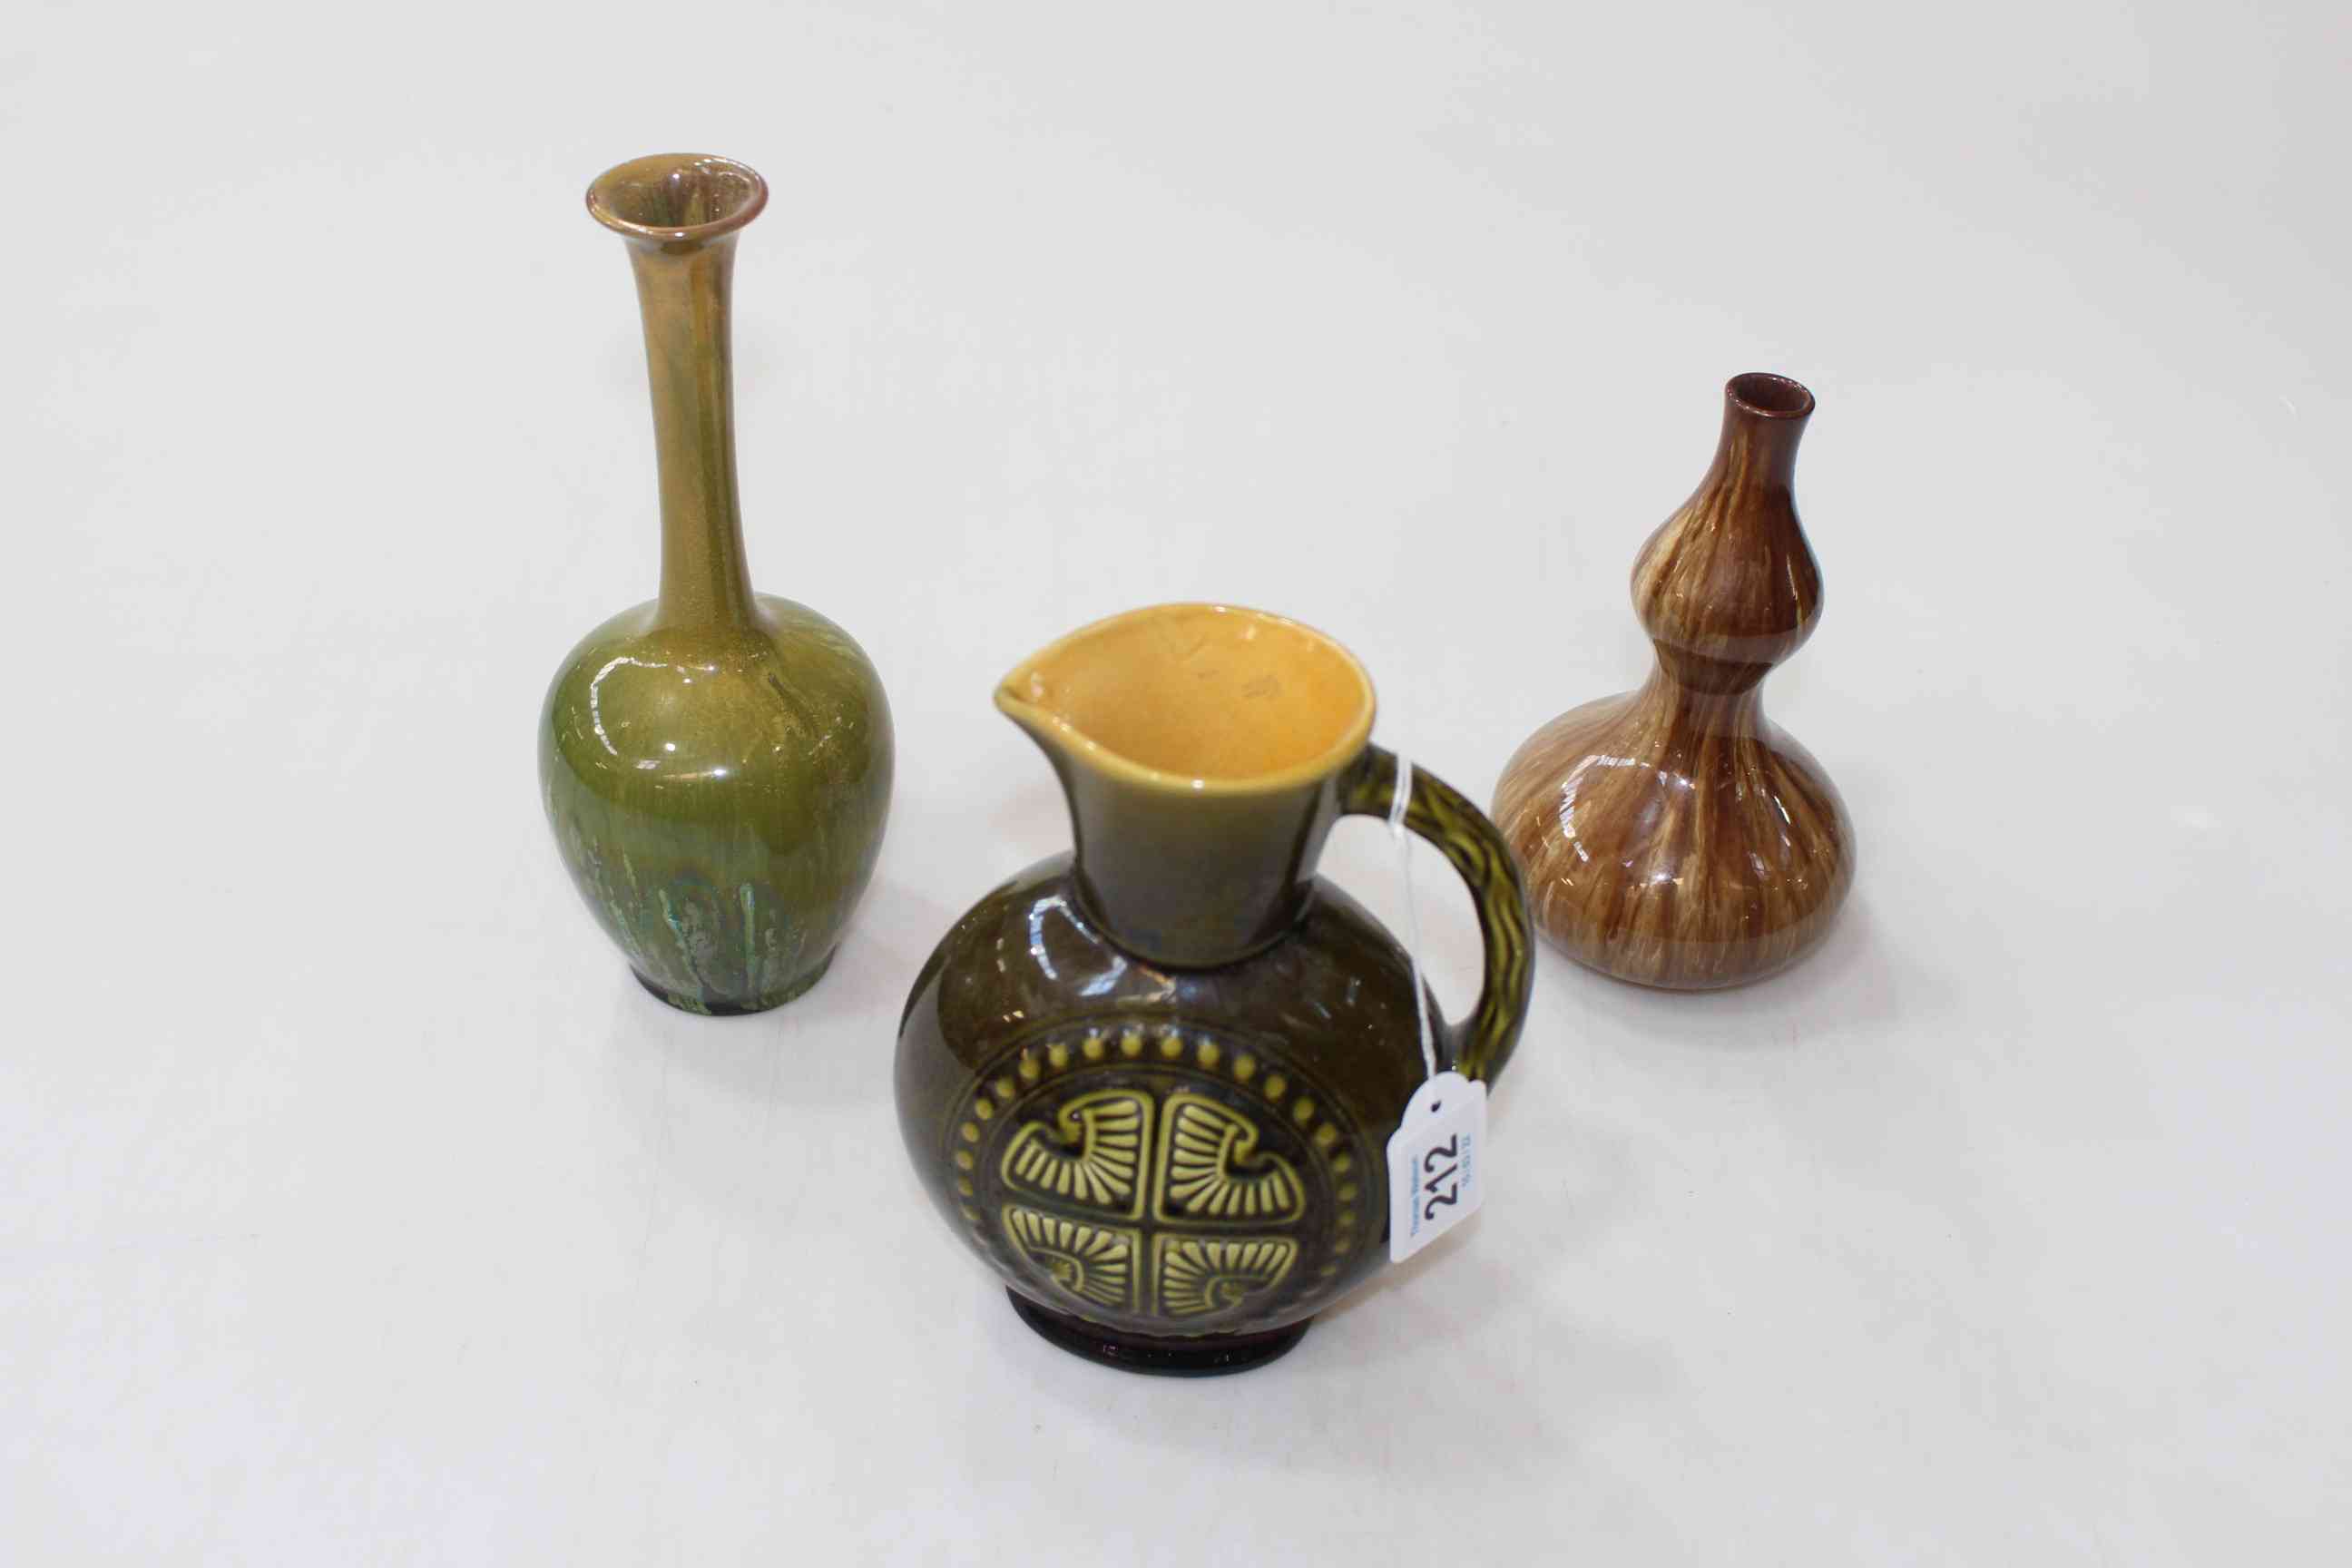 Linthorpe jug, no. 928, Chr. Dresser double gourd vase, and slender neck vase (3).